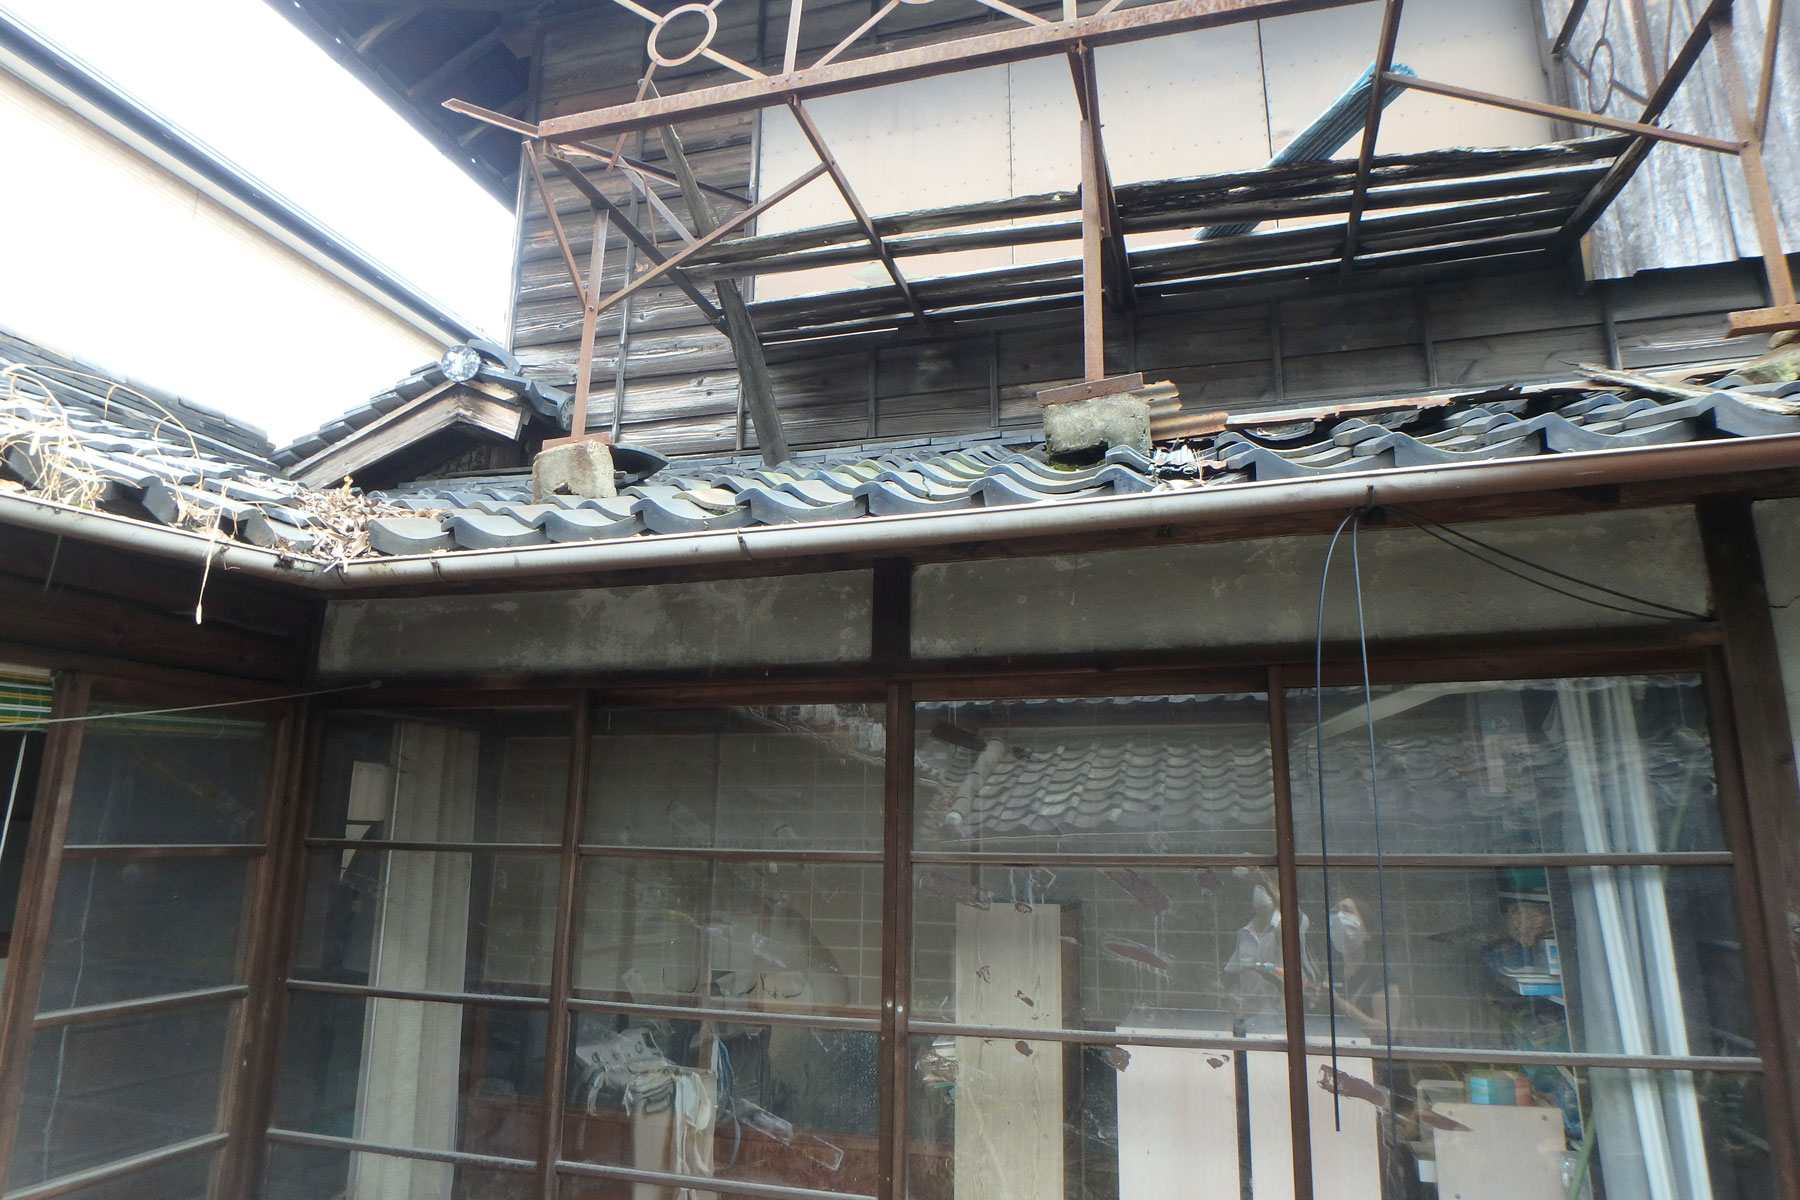 少し前からご相談を頂いていた奈良県橿原市の古家リノベーション。中古物件を購入して改修する計画です。具体的に計画を進める前に、建物の状態をある程度調べて改修できそうな状態かどうか確認するため現地に伺いました。 昭和初期の建物。30年ほど空き家の状態ということで、時間が止まったような古家でした。縁側のガラスはかすかに波打っています（現在ほど高精度で製造できなかったためです。古いガラスの特徴です）。